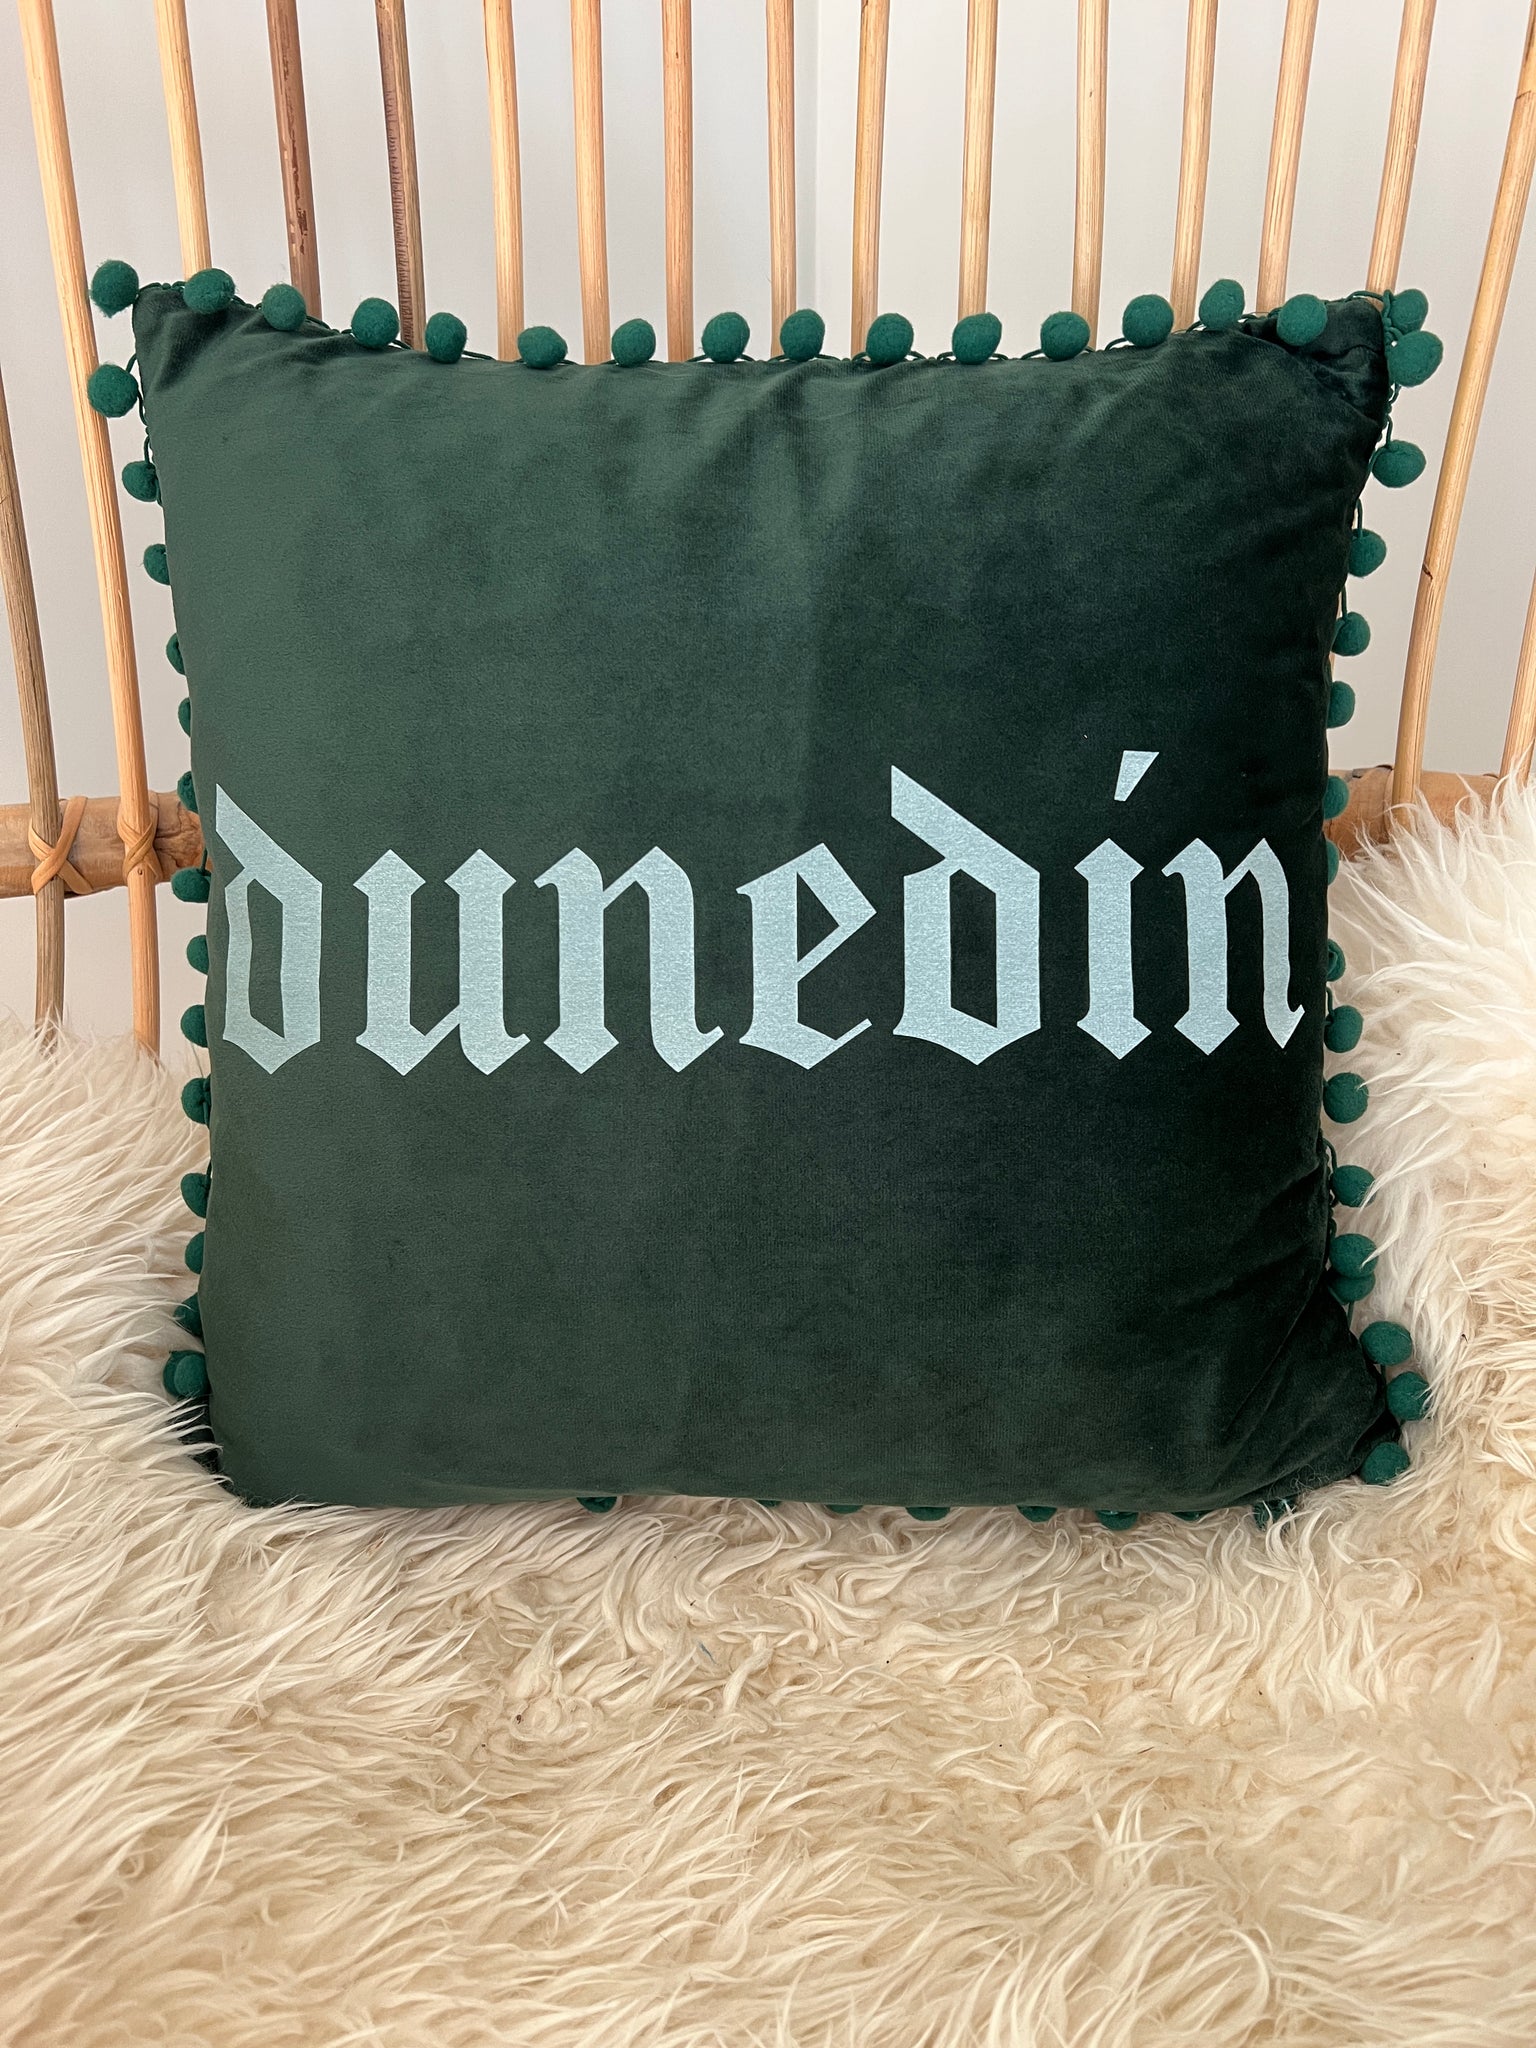 Dunedin Green Velvet Cushion Cover with Bobbles